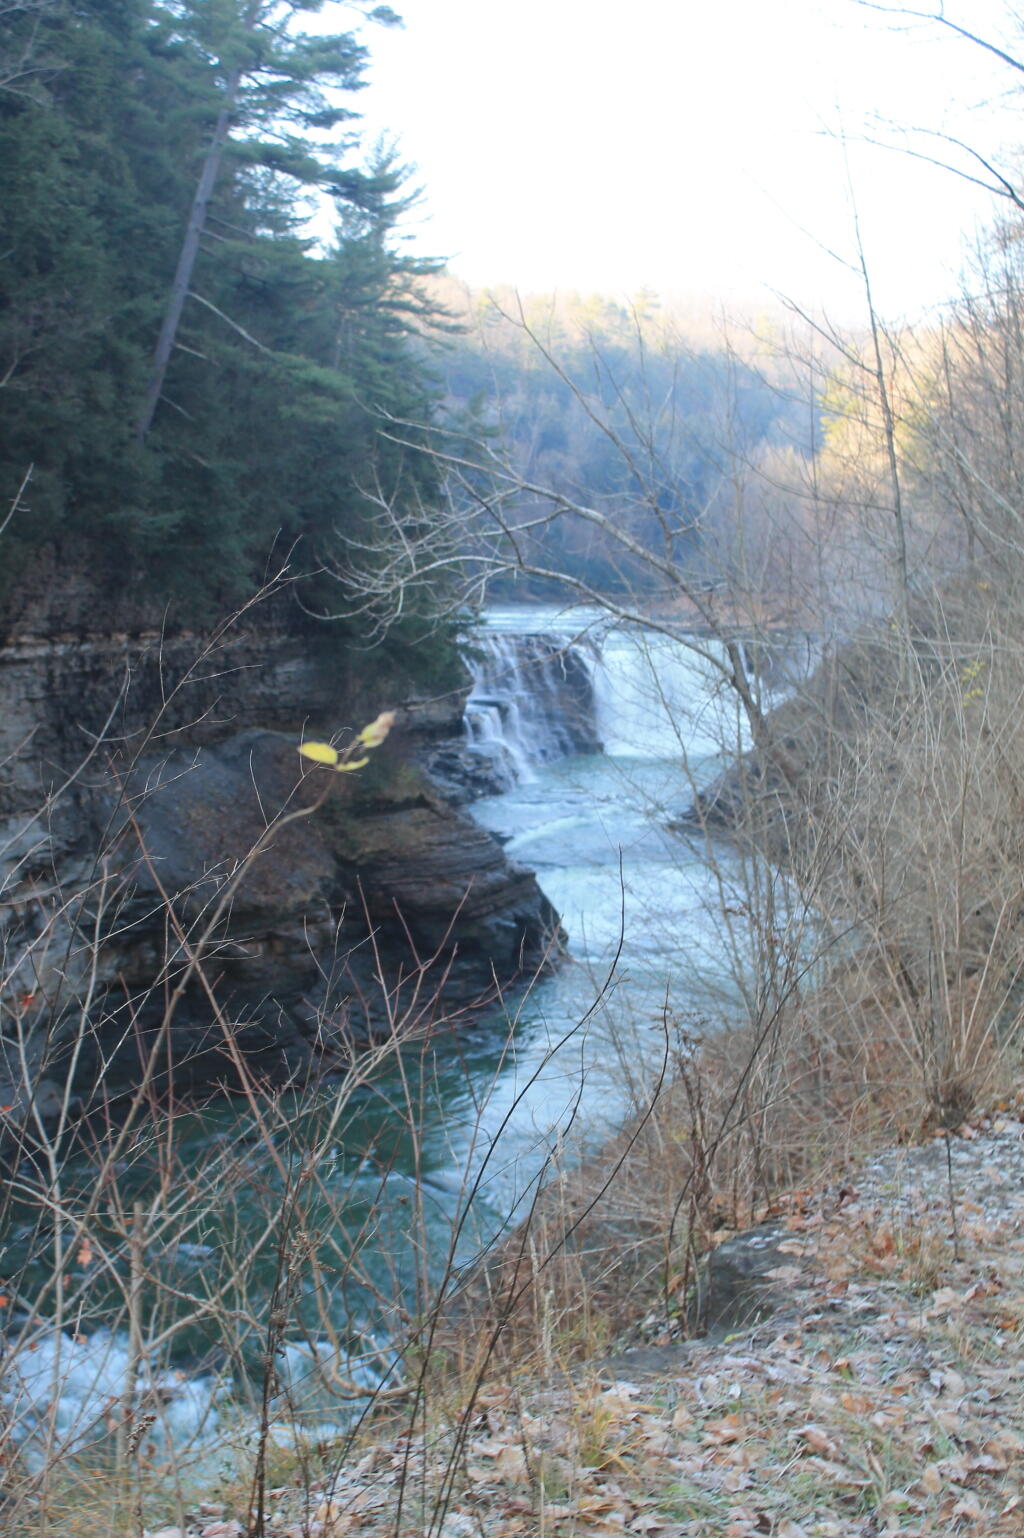 Lower Falls from Bridge Trail